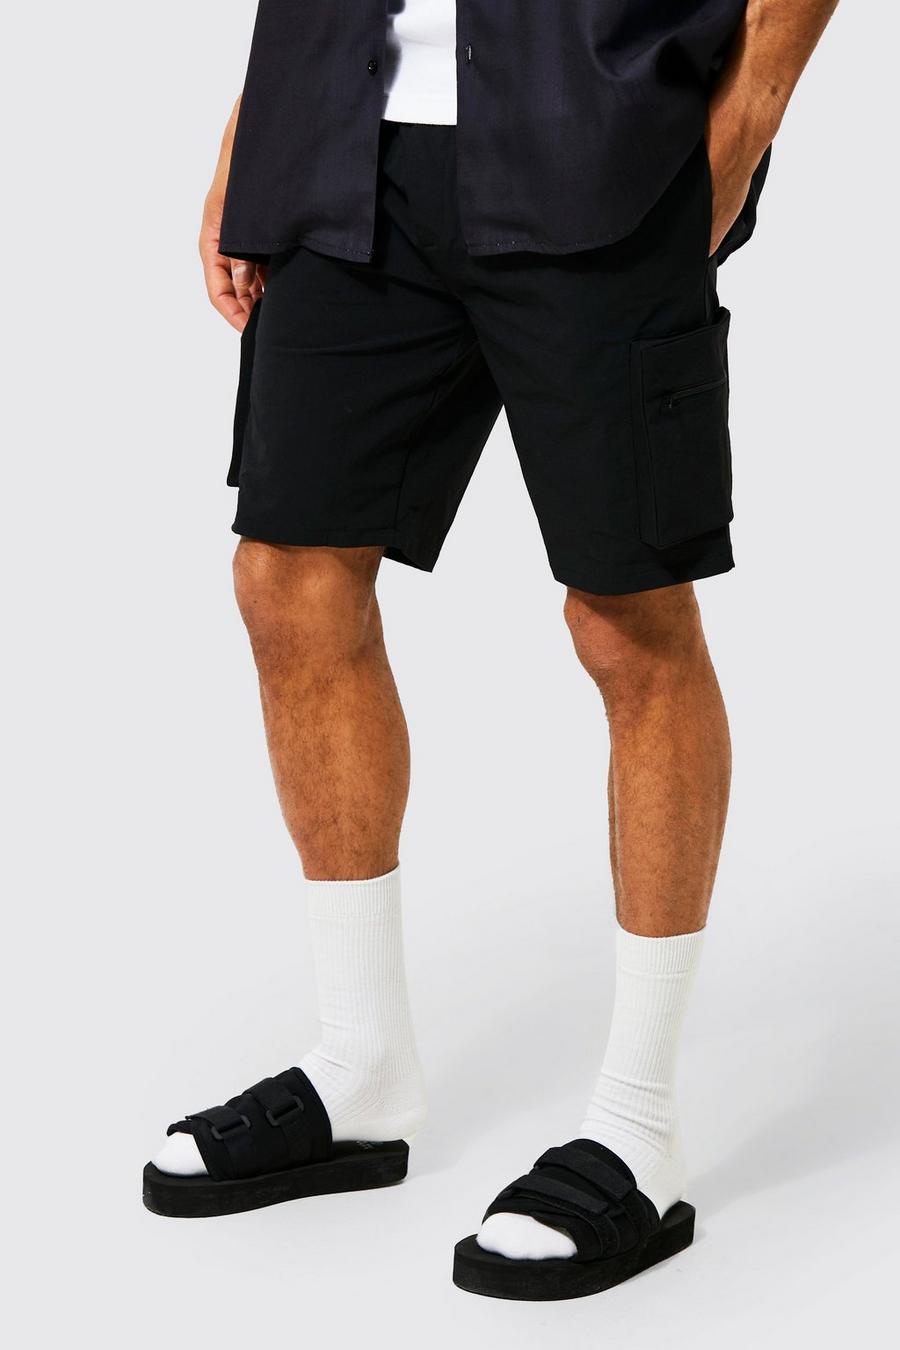 Pantalón corto cargo ajustado elástico técnico con cremallera, Black negro